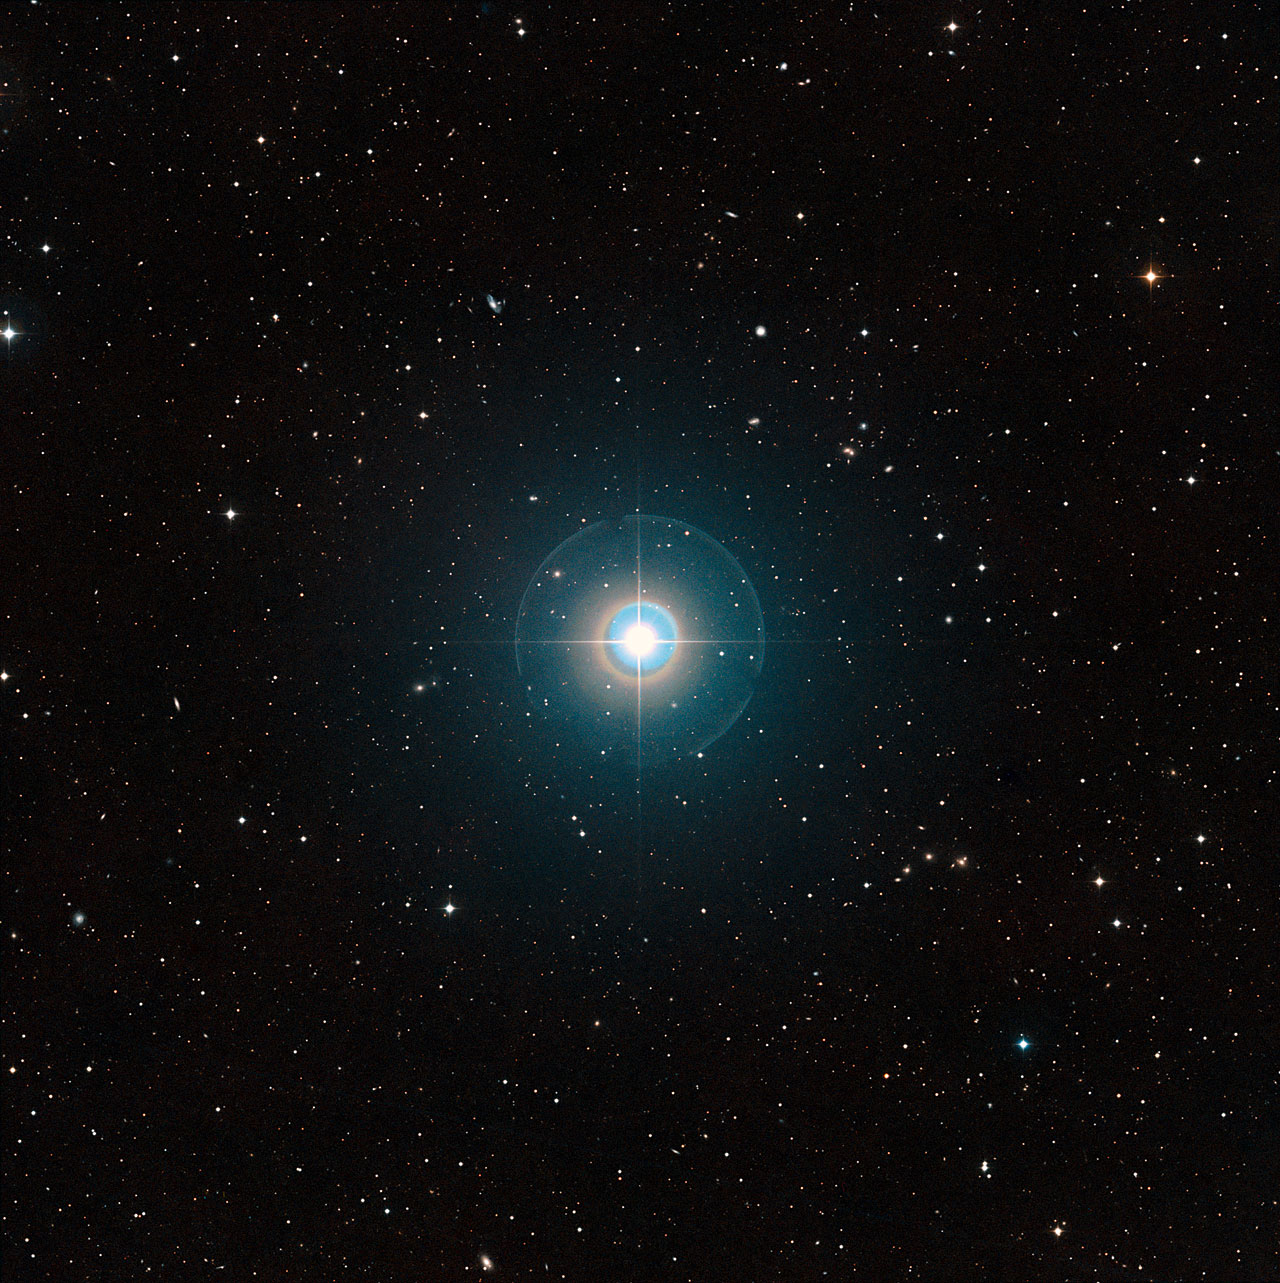 Cette image à grand champ du ciel autour de Tau Bootis a été créée à partir de clichés du Digitized Sky Survey 2. L'étoile elle-même, suffisamment brillante pour être vue à l'œil nu, se trouve au centre. Les traits fins et les cercles colorés autour d'elle sont des artefacts provoqués par le télescope et la plaque photographique utilisée et ne sont pas réels. L'exoplanète Tau Bootis b est en orbite à faible distance de l'étoile et est totalement invisible sur cette image. La planète vient juste d'être détectée de manière directe grâce à sa propre lumière en utilisant le VLT de l'ESO. © ESO/Digitized Sky Survey 2